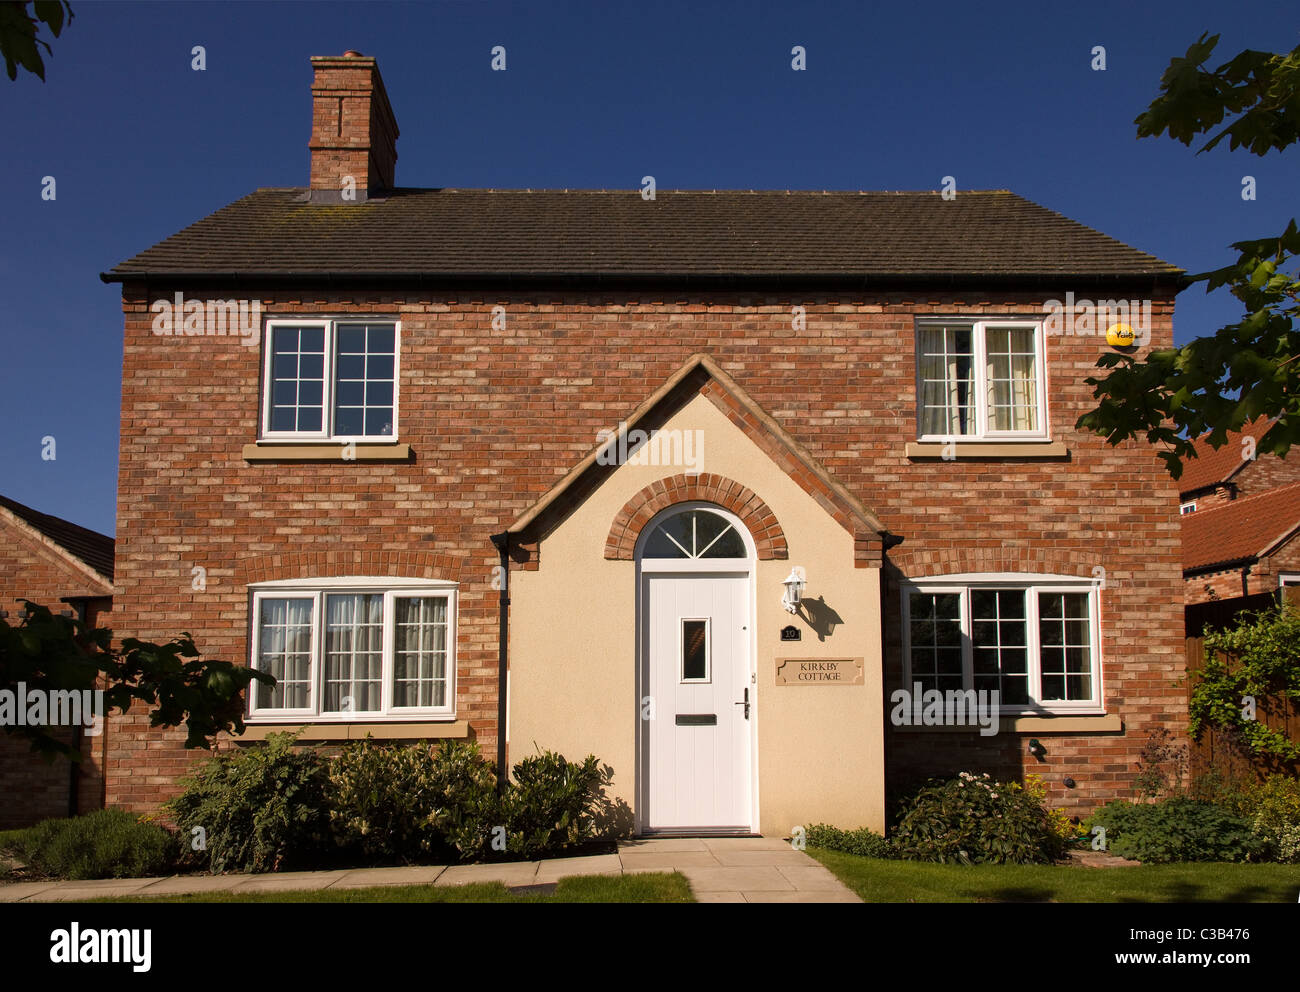 Newbuild casa in stile cottage inglese tradizionale, Inghilterra, Regno Unito Foto Stock